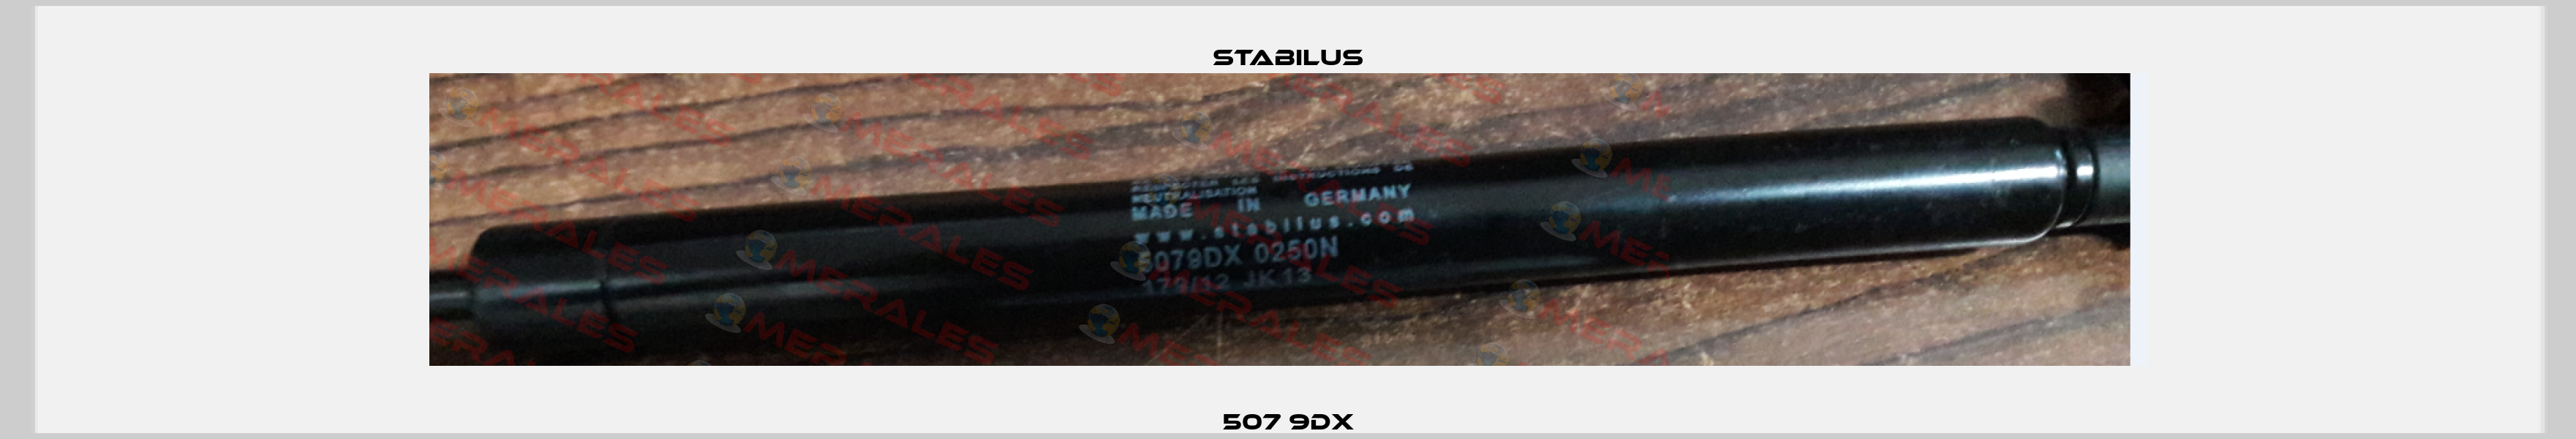 507 9DX Stabilus